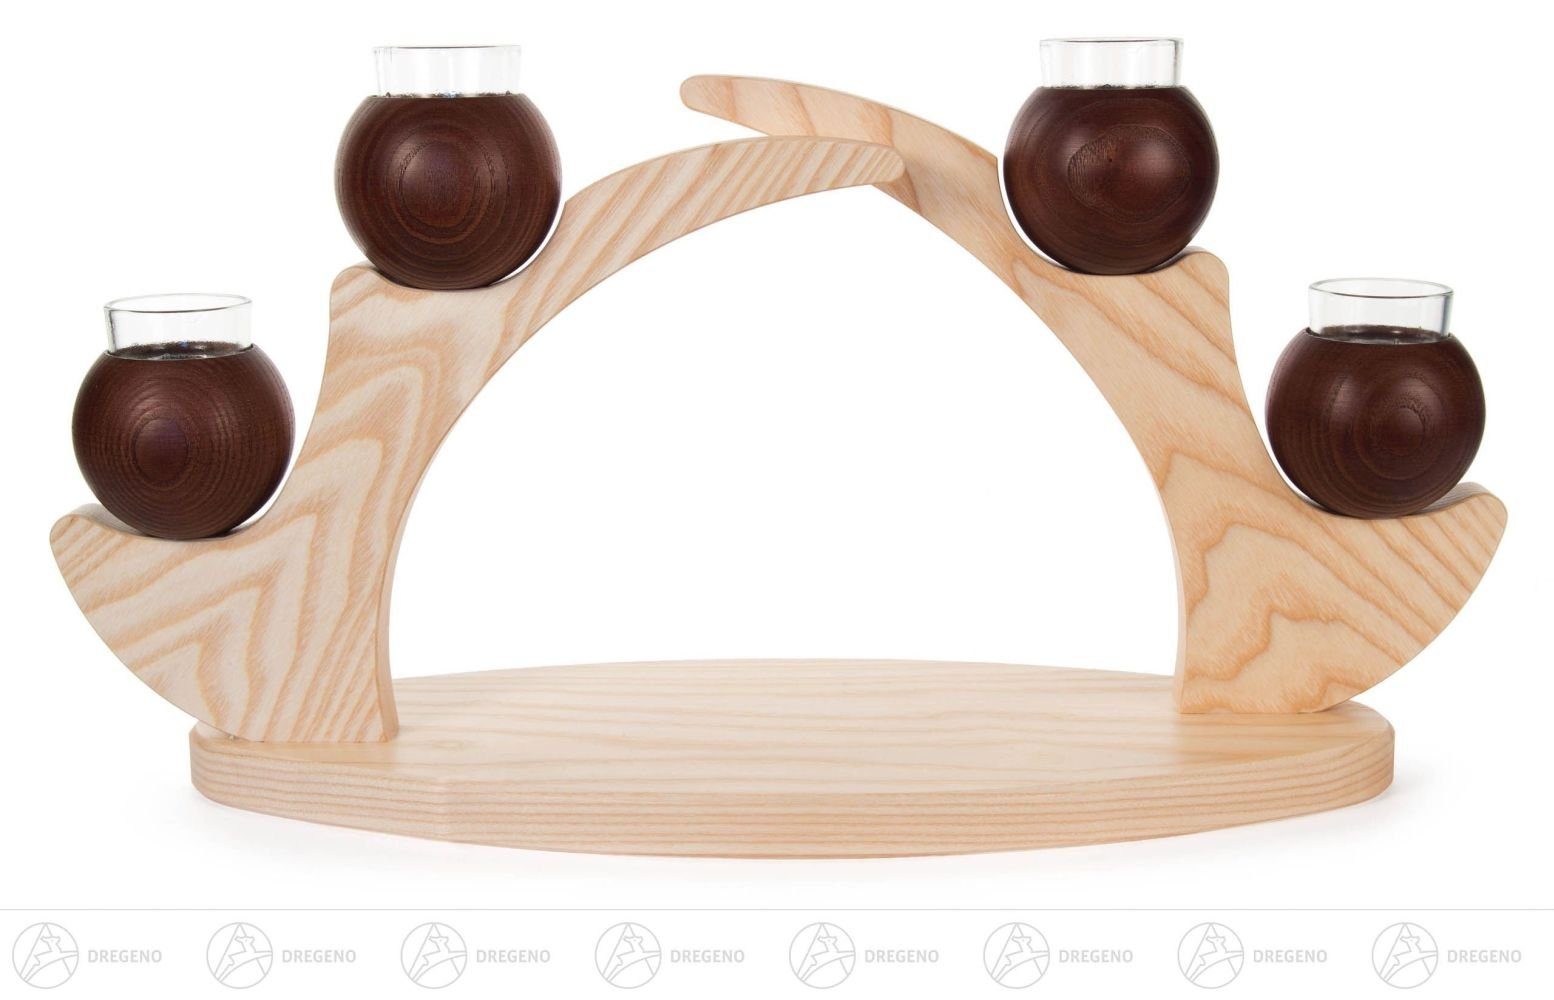 Dregeno Erzgebirge Kerzenhalter Tischleuchter für 4 Kerzen braun, aus Massivholz BxHxT 460 x 240 x 15, schlichtes schönes Design